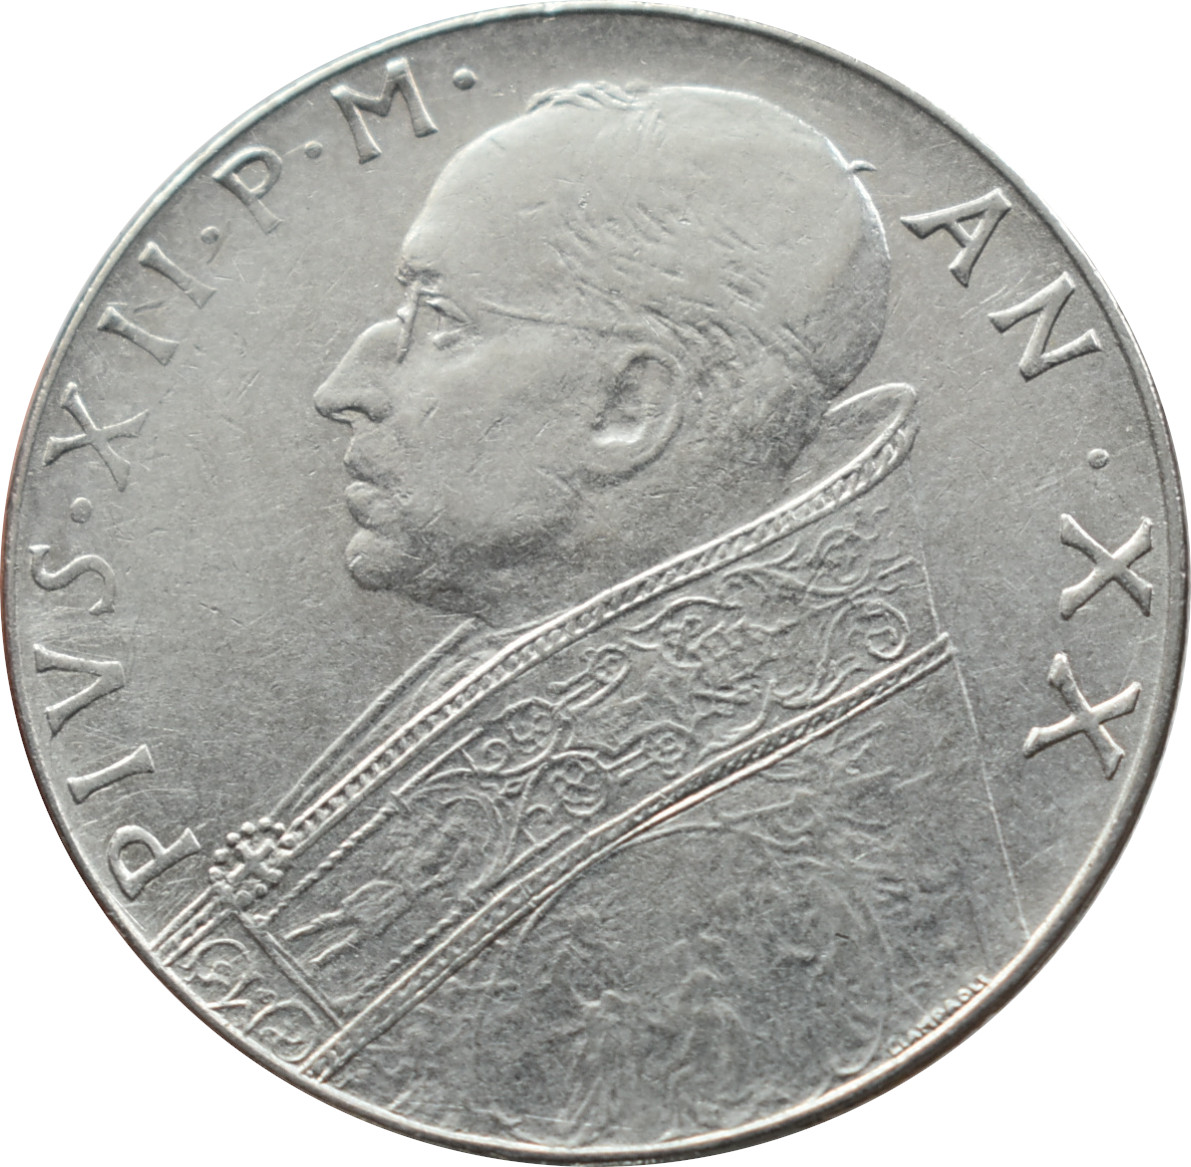 Vatikán 100 Lira 1958